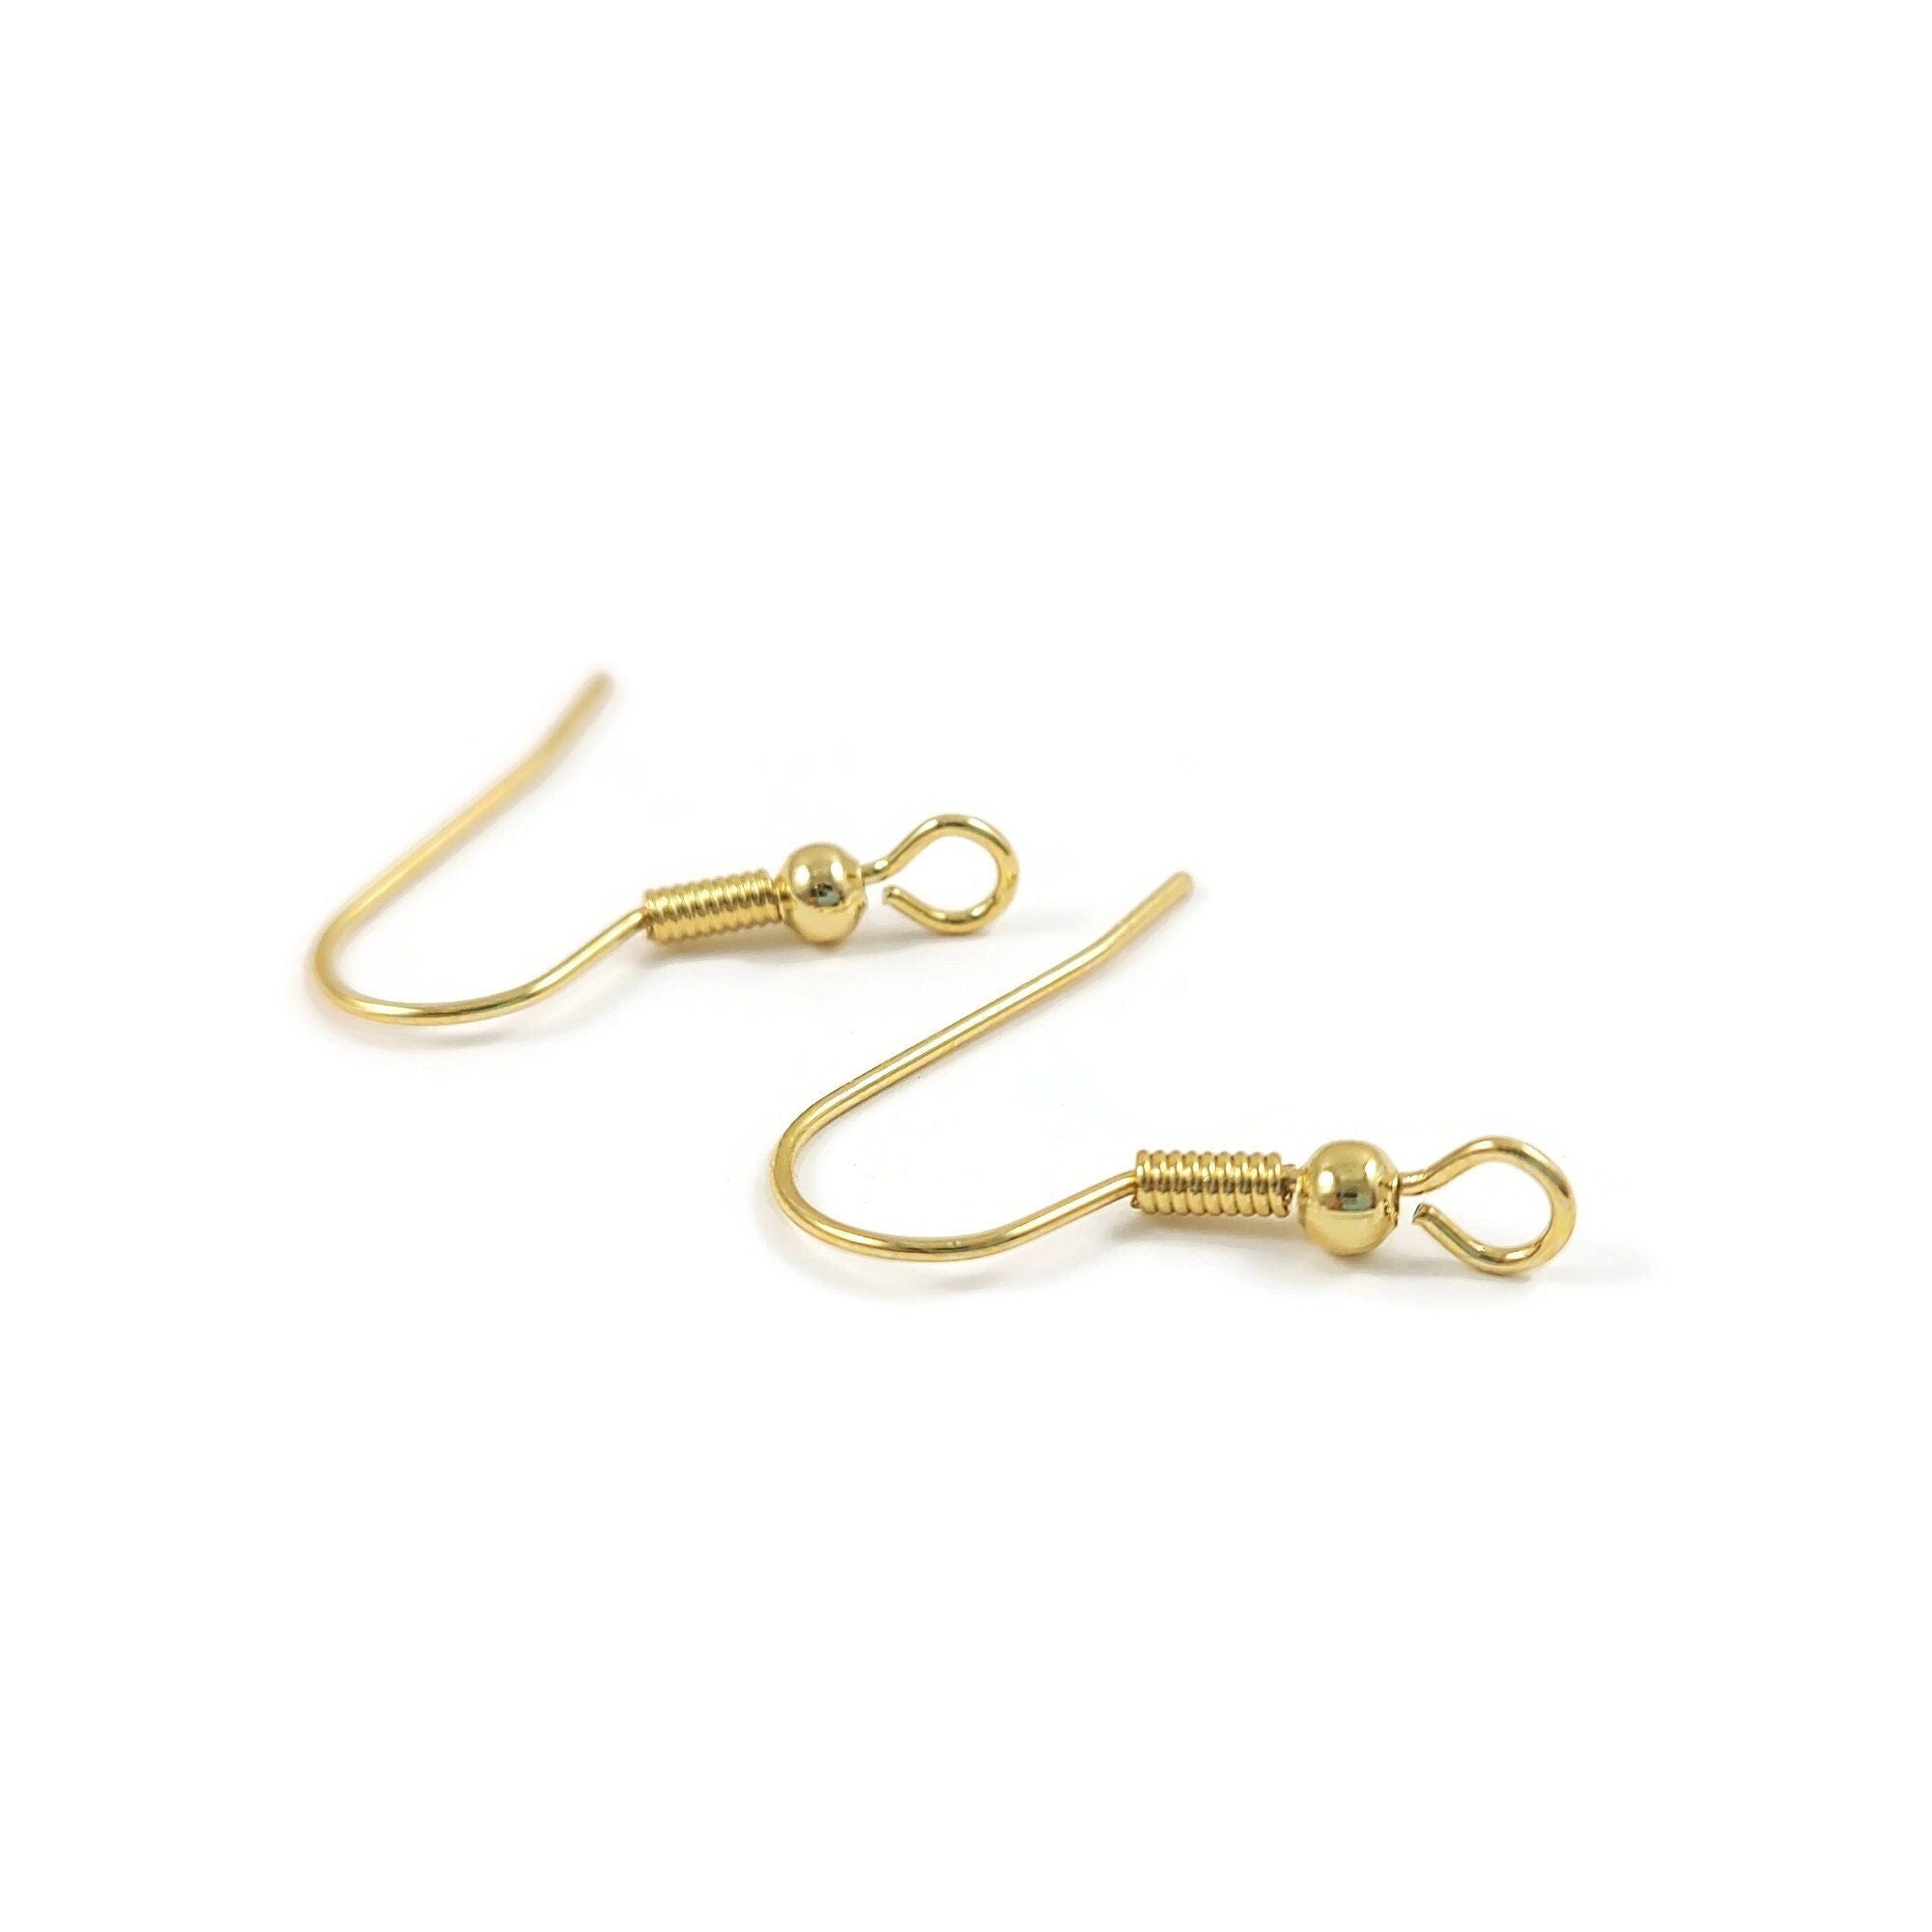 Earring Hooks 14K Gold Plated Hypoallergenic Ear Wires for Jewelry Making  （200 PCS Earring Hooks+200 PCS Earring Backs）